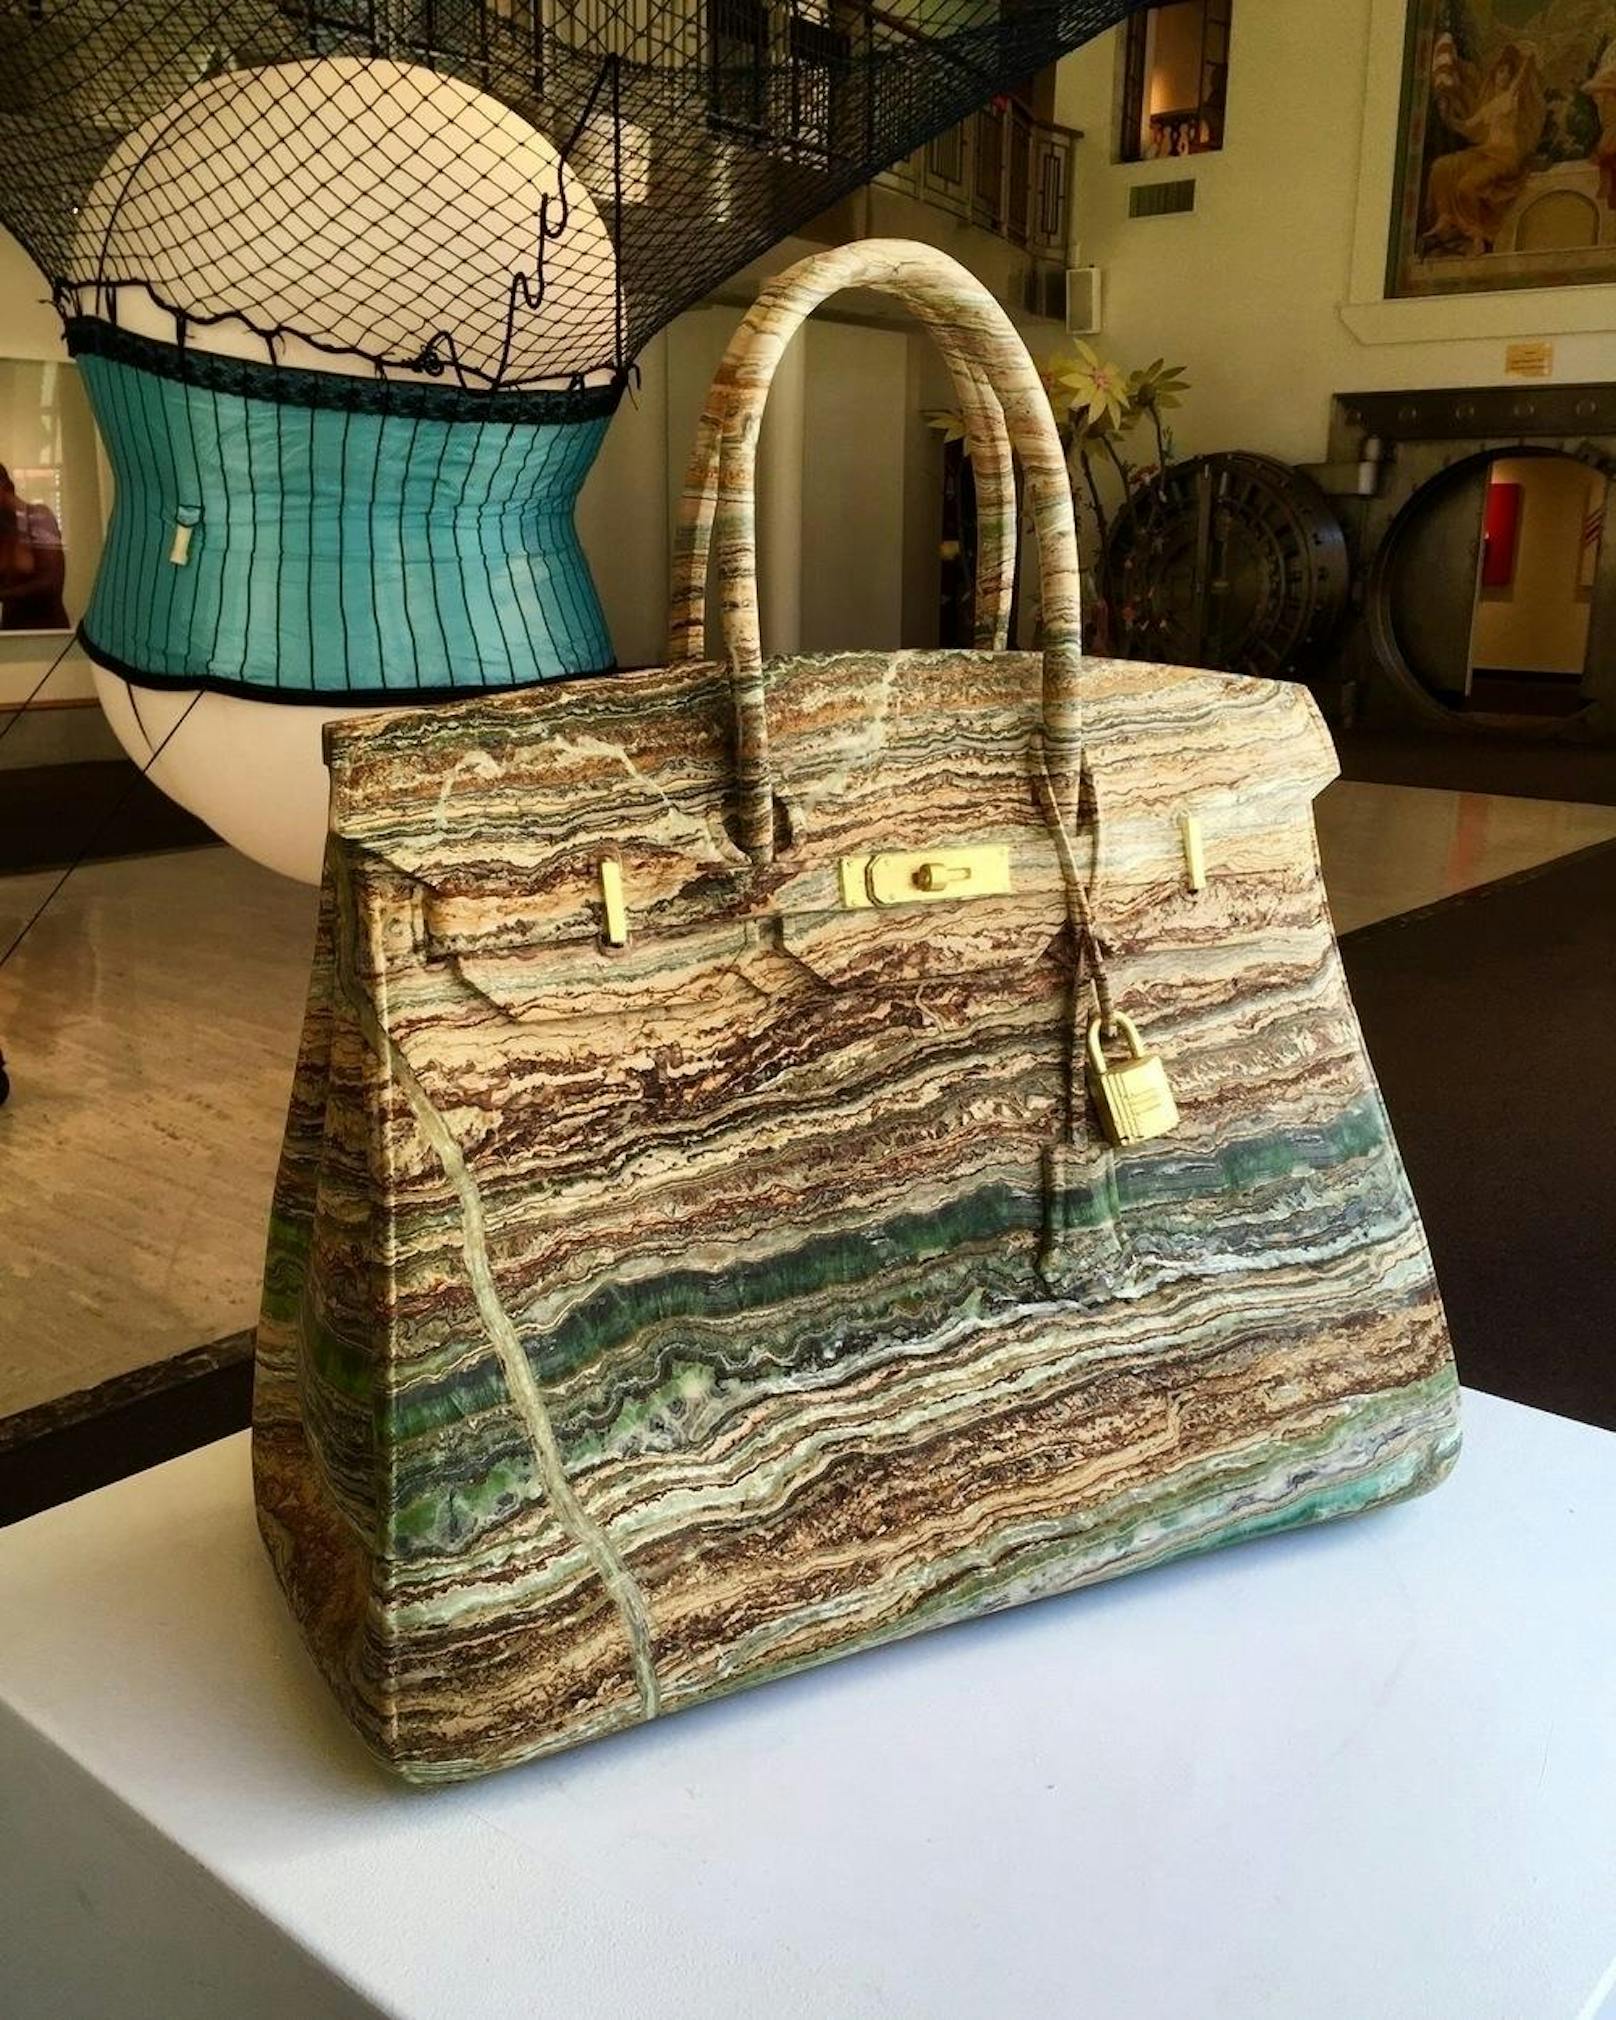 Die täuschend echte Birkin Bag wurde aus dem seltenen Verde Smeraldo Marmor gemacht. (Foto: Barbara Segal)